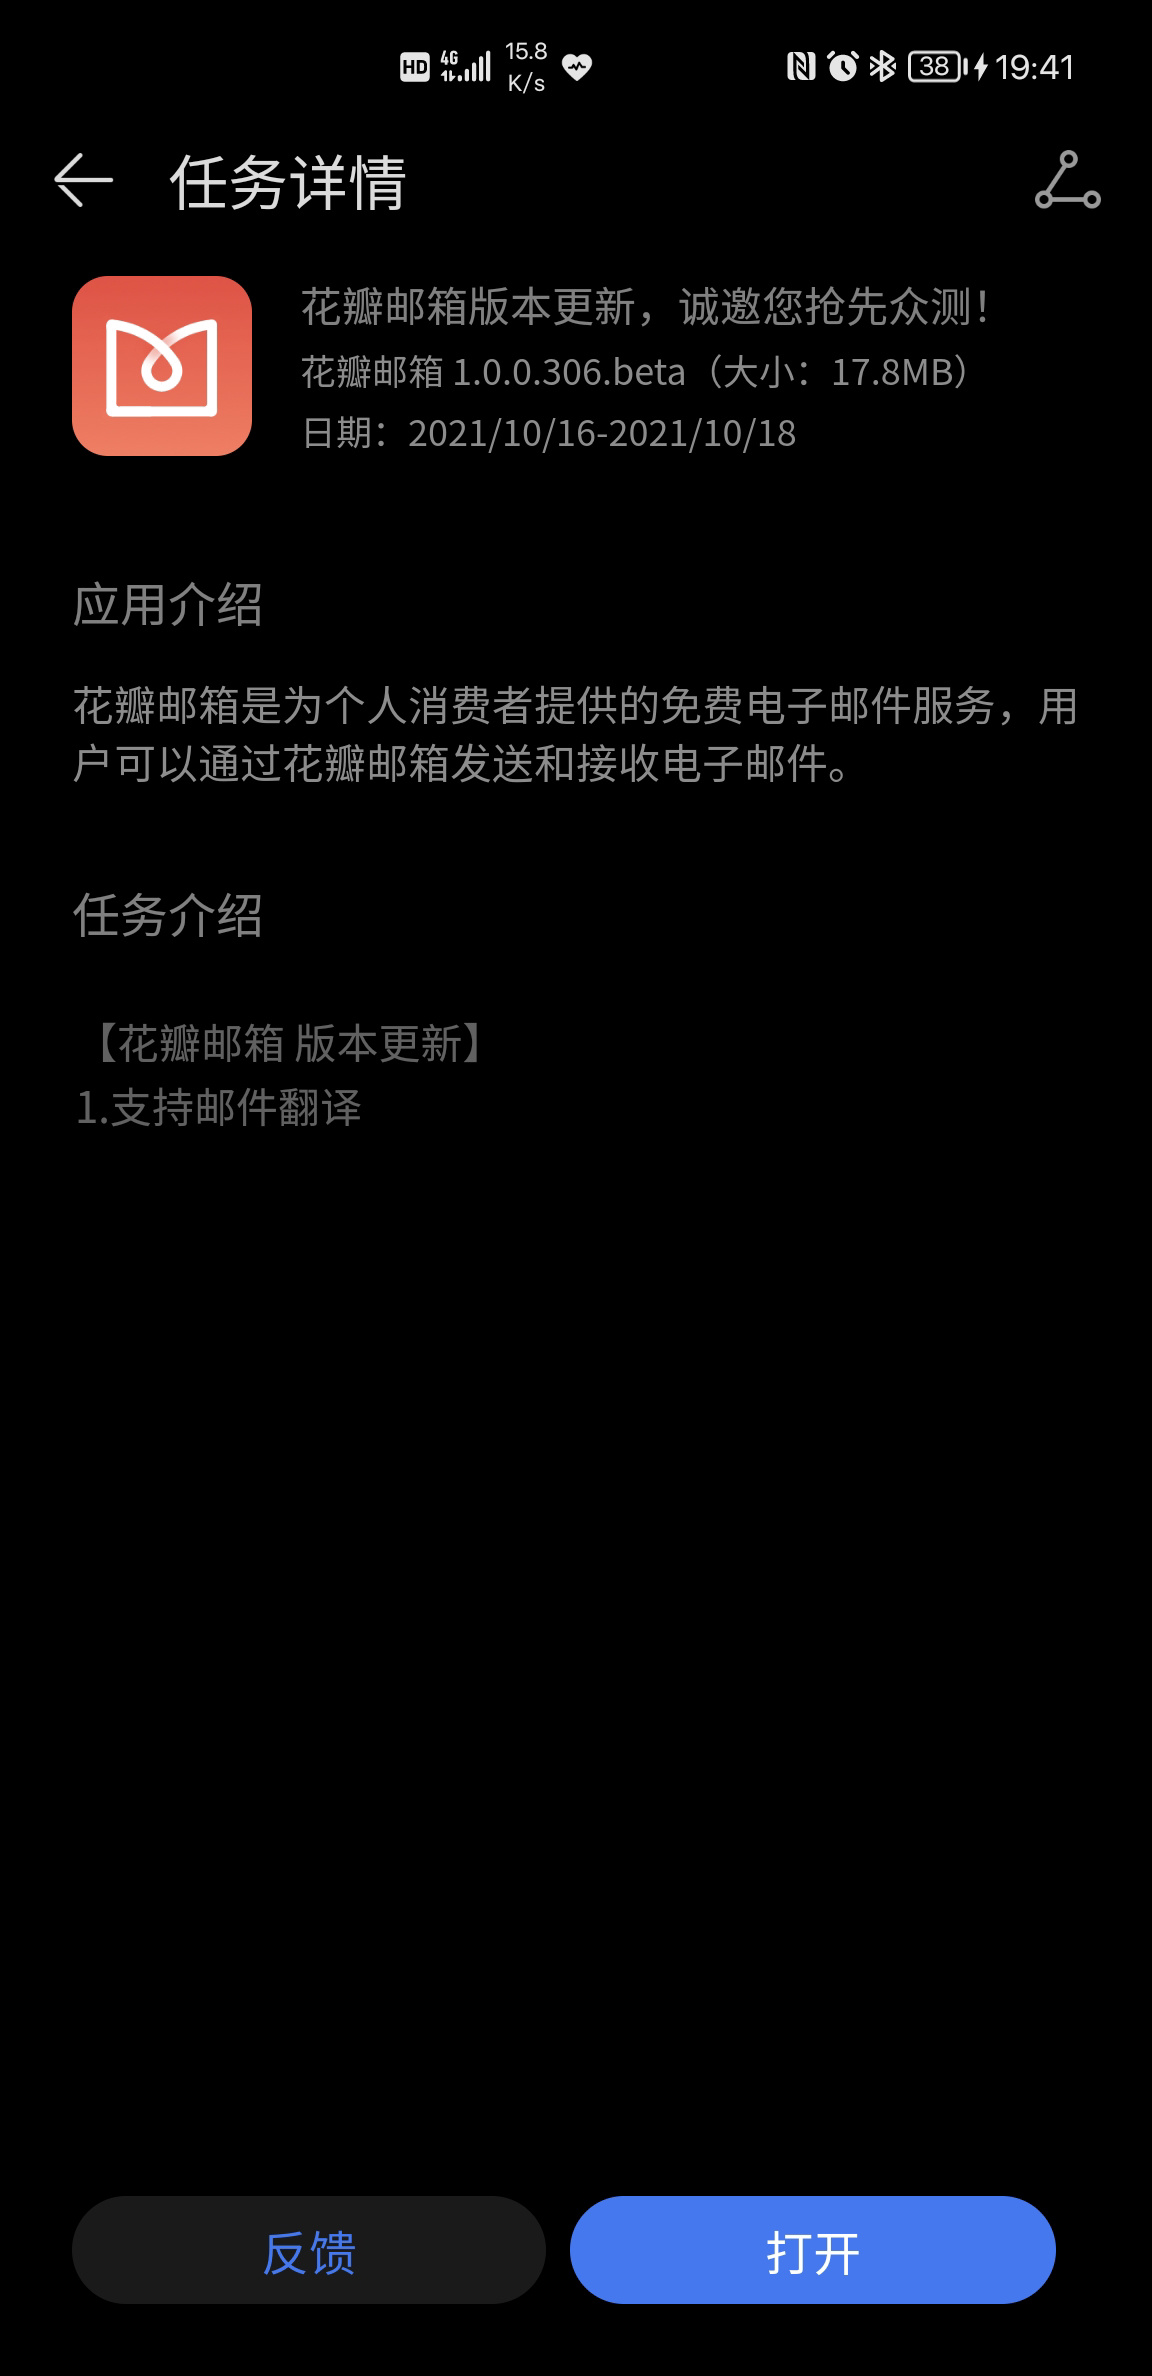 Huawei Petal Mail 1.0.0.306 beta